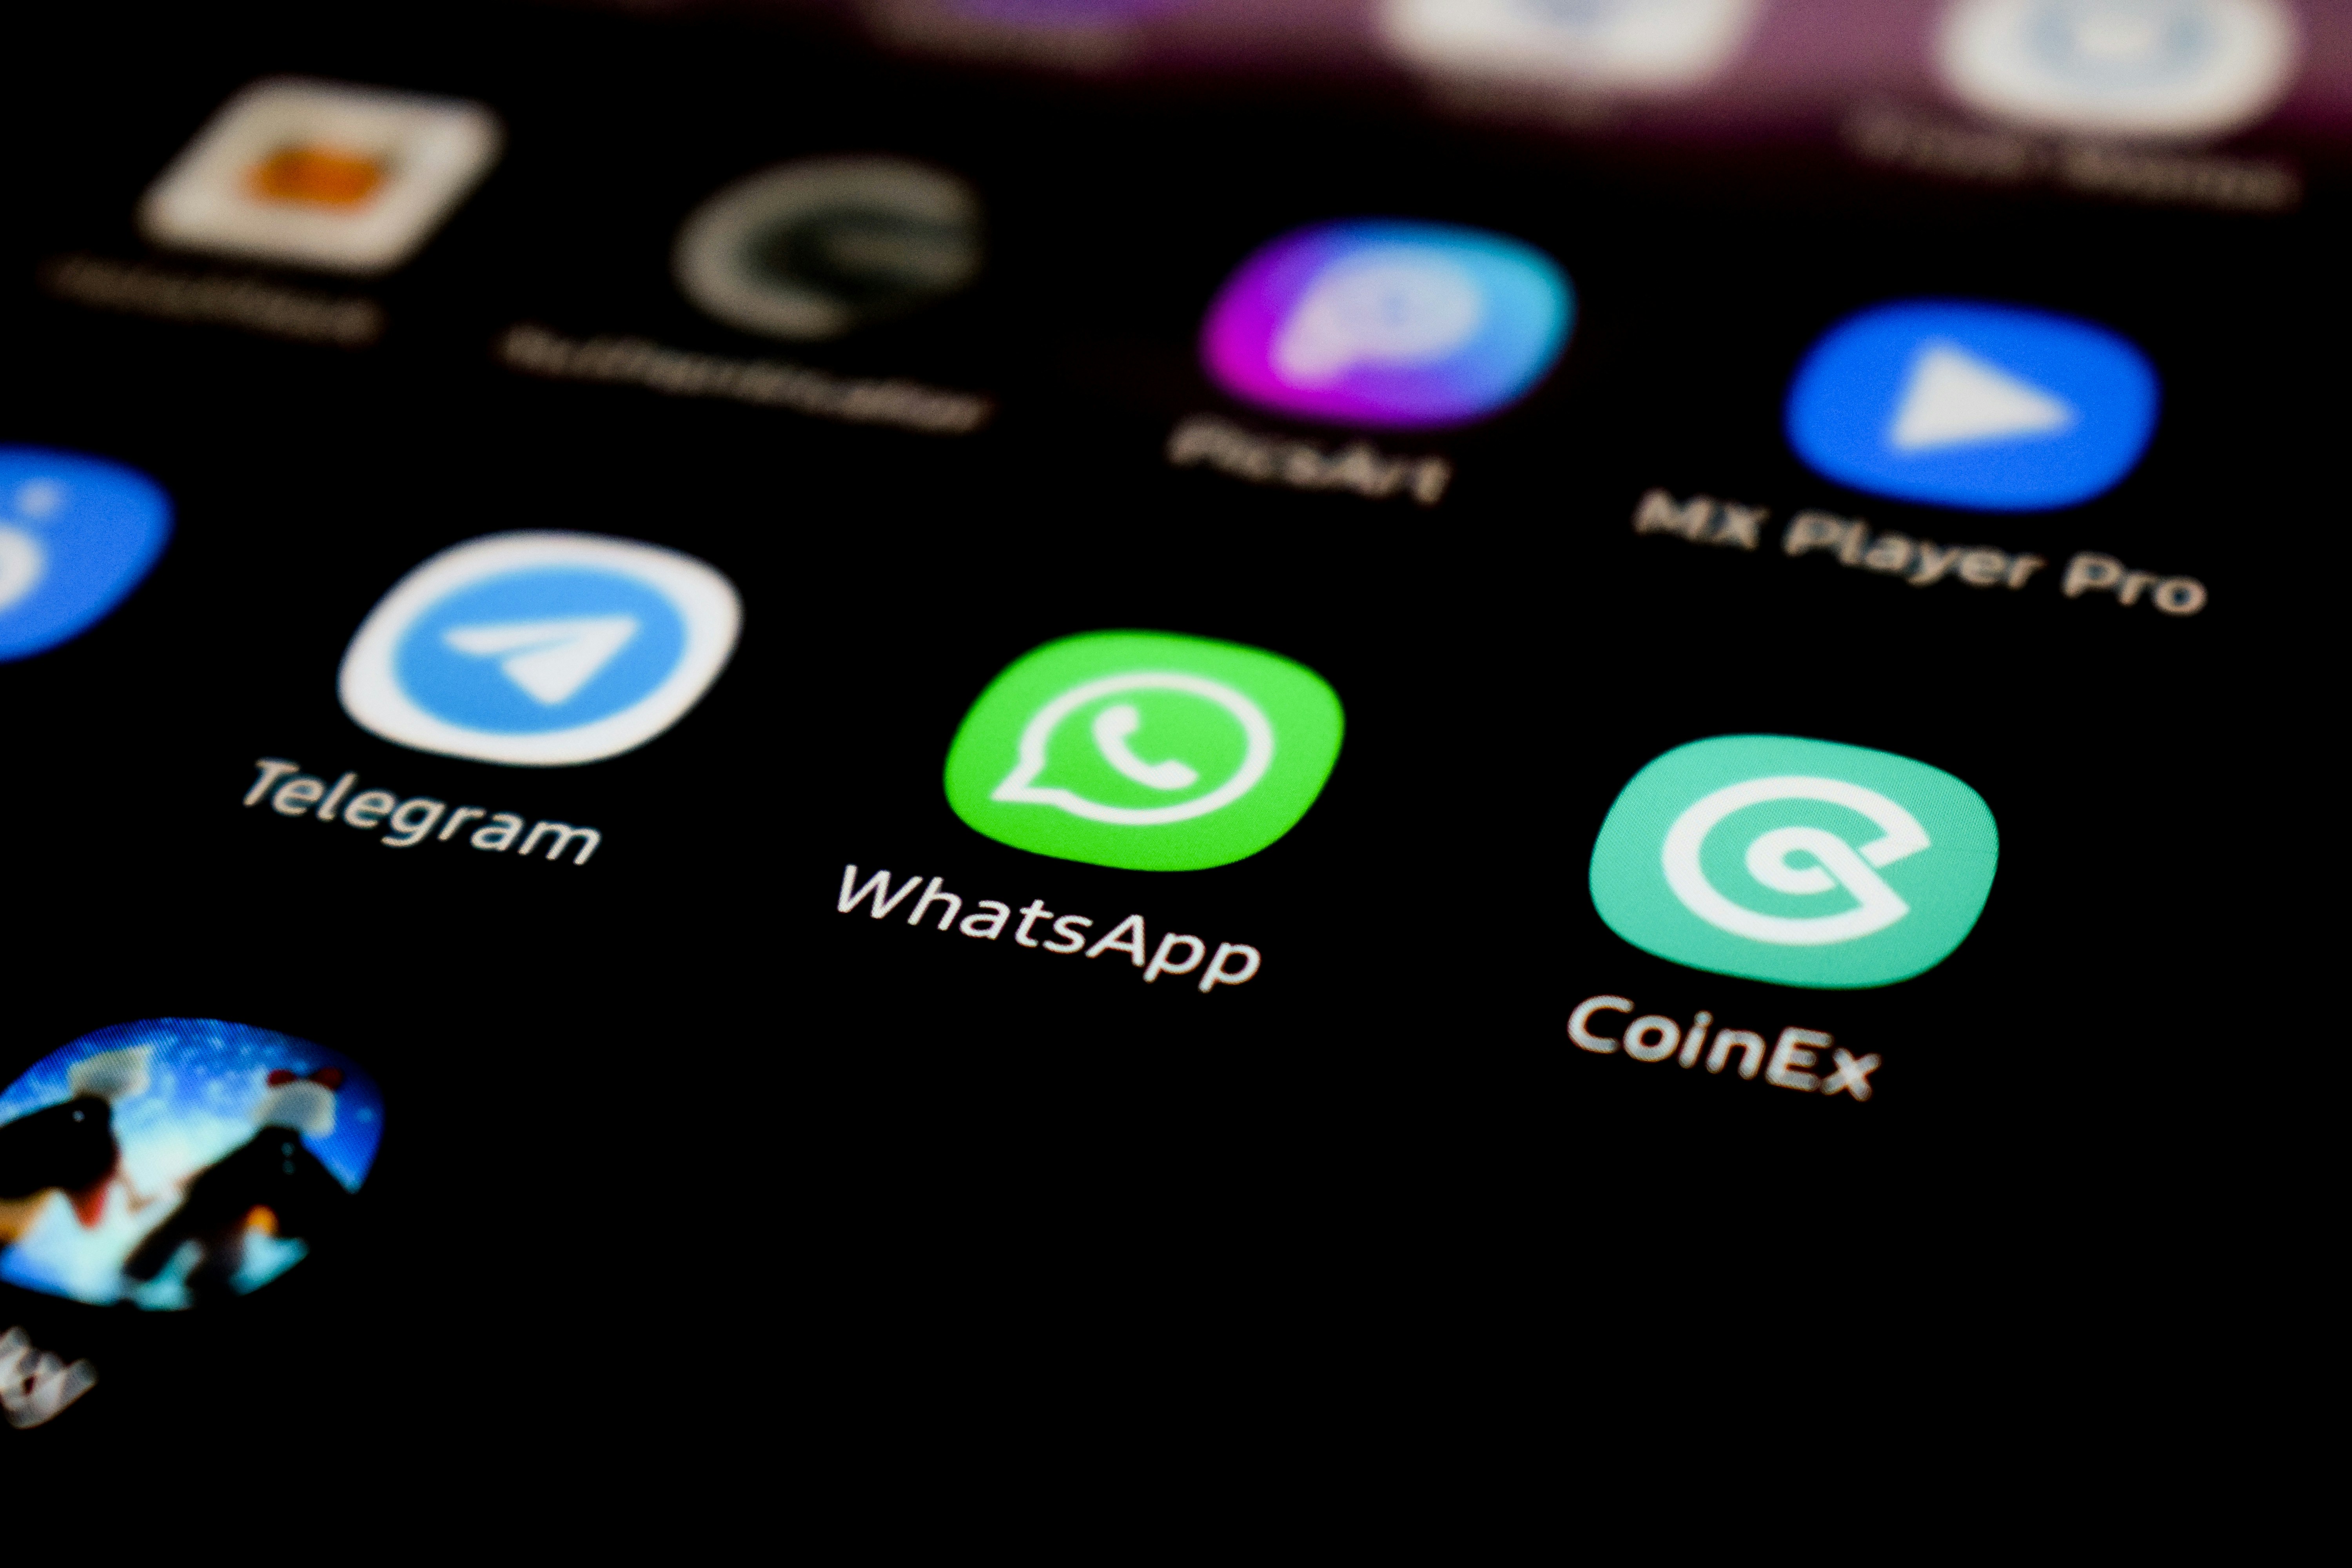 WhatsApp muda cor para verde neon e internet não perdoa - Giz Brasil